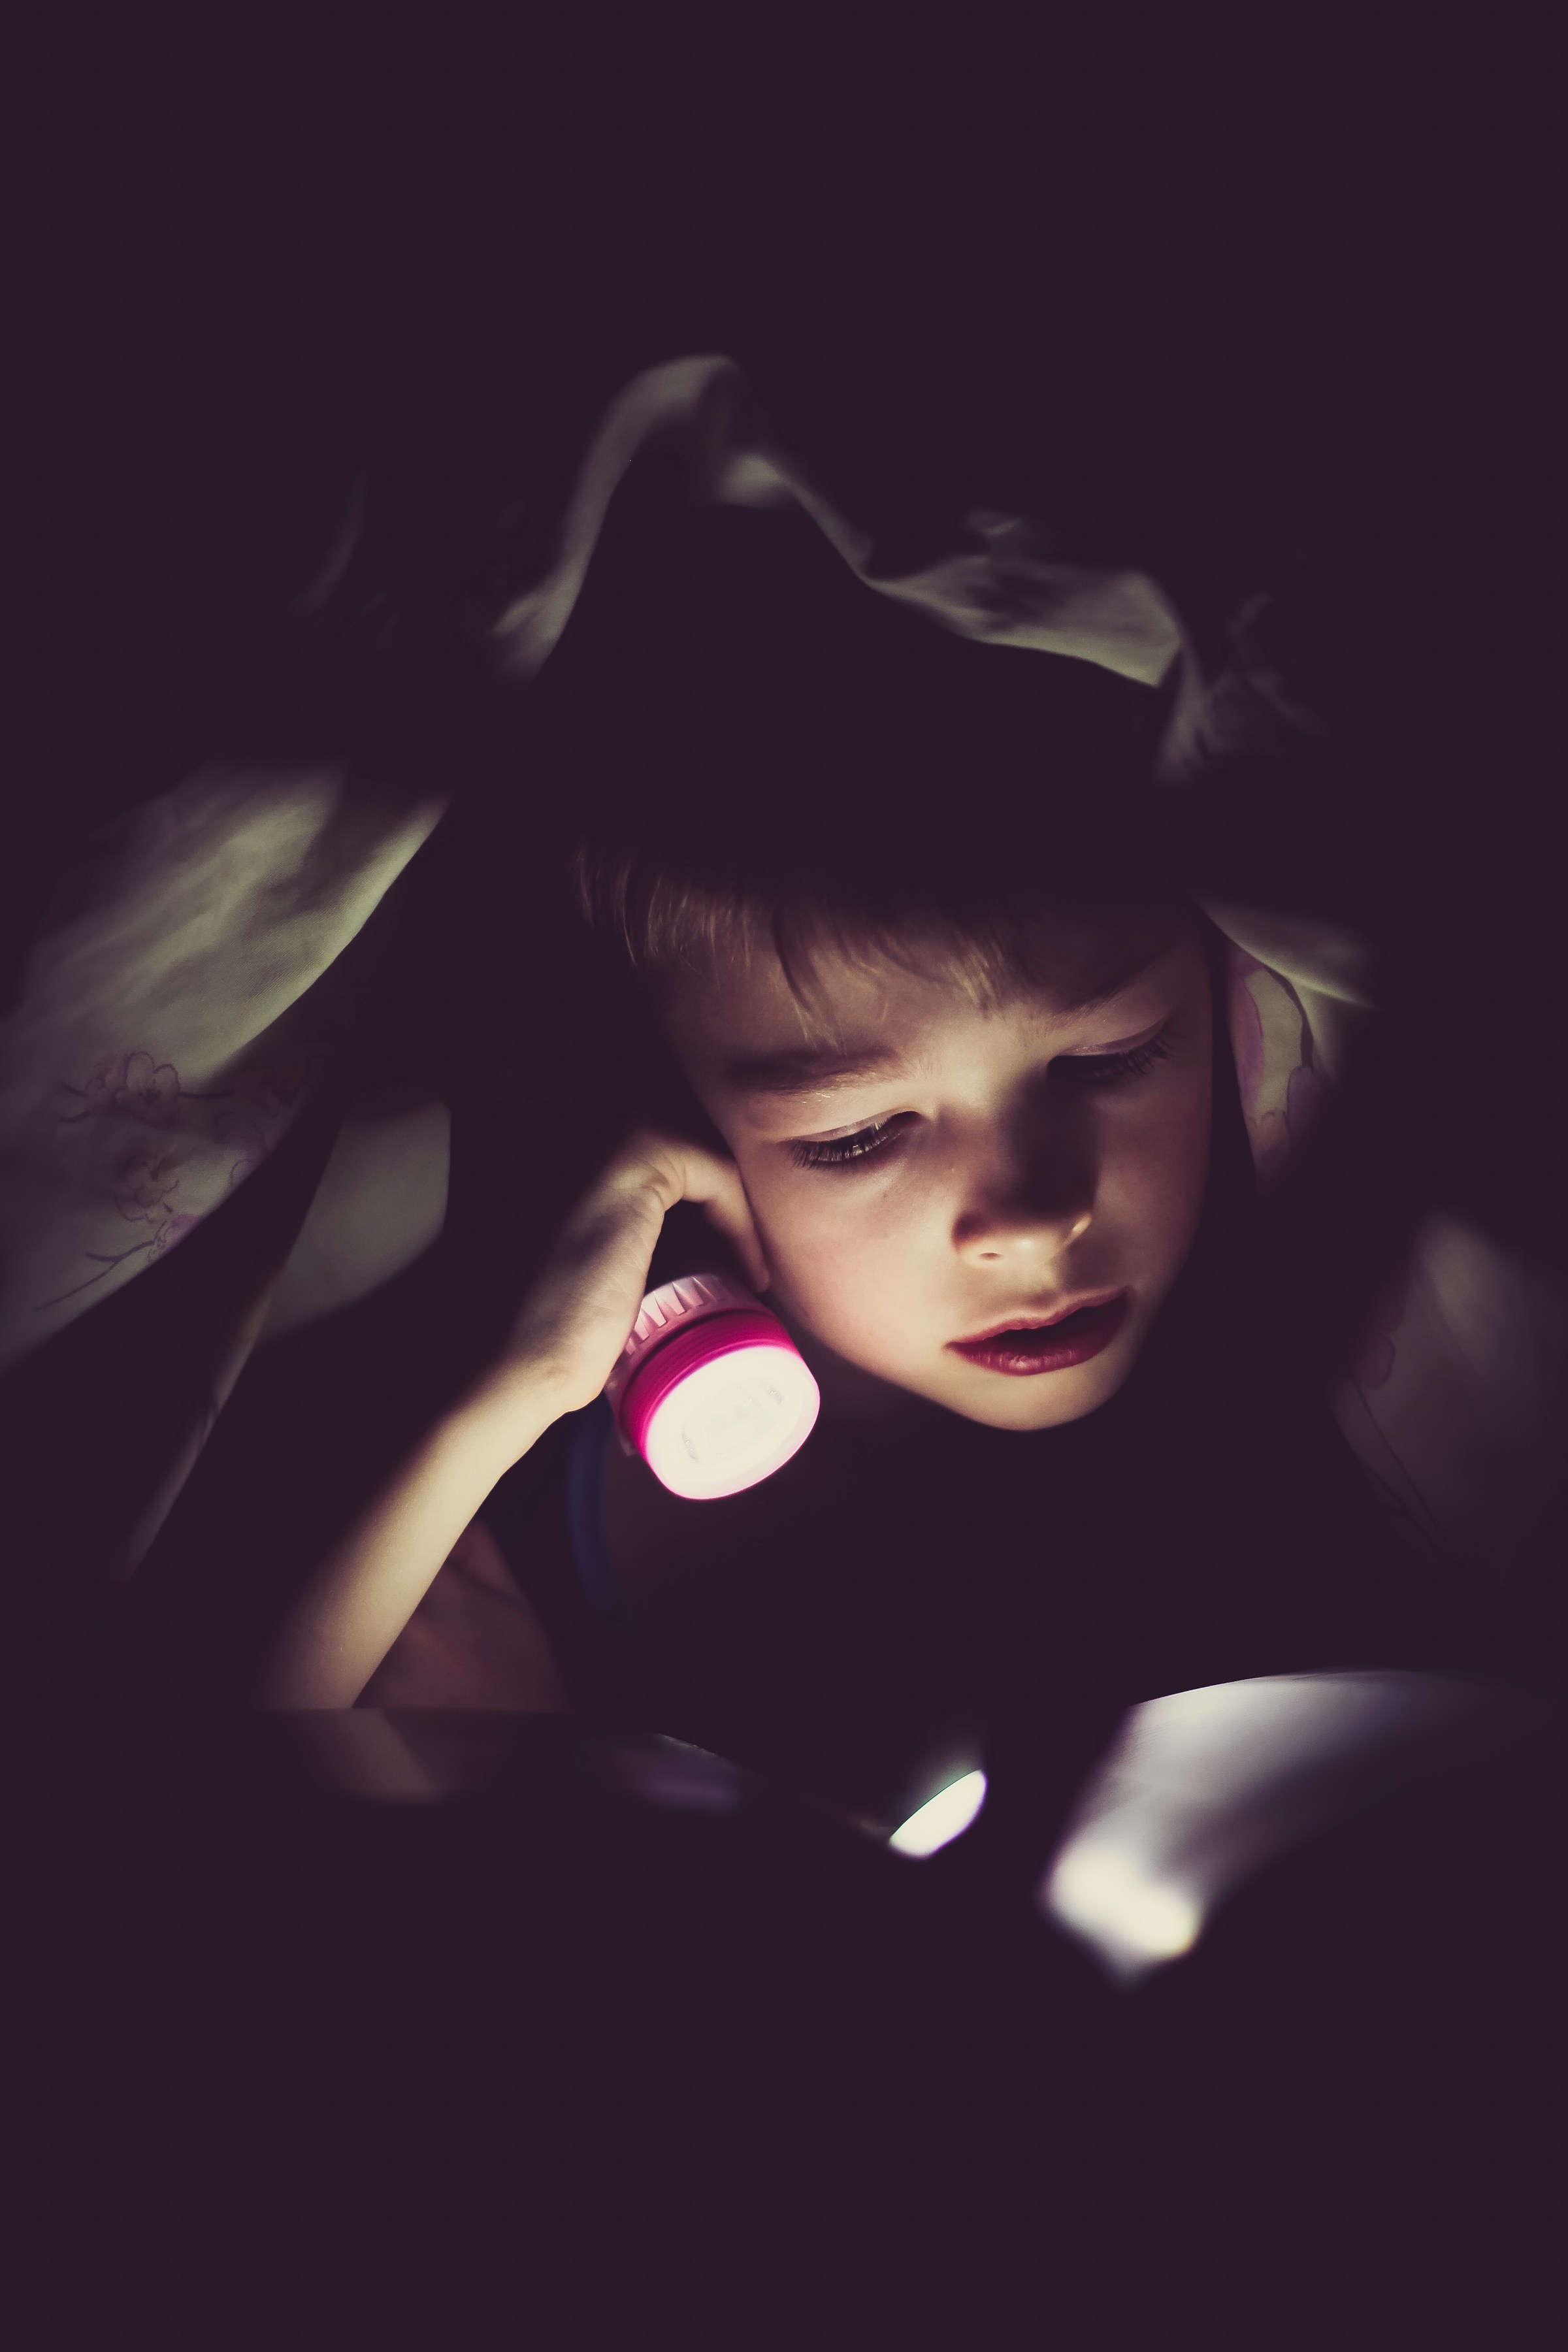 Un petit garçon tenant une lampe de poche | Source : Unsplash